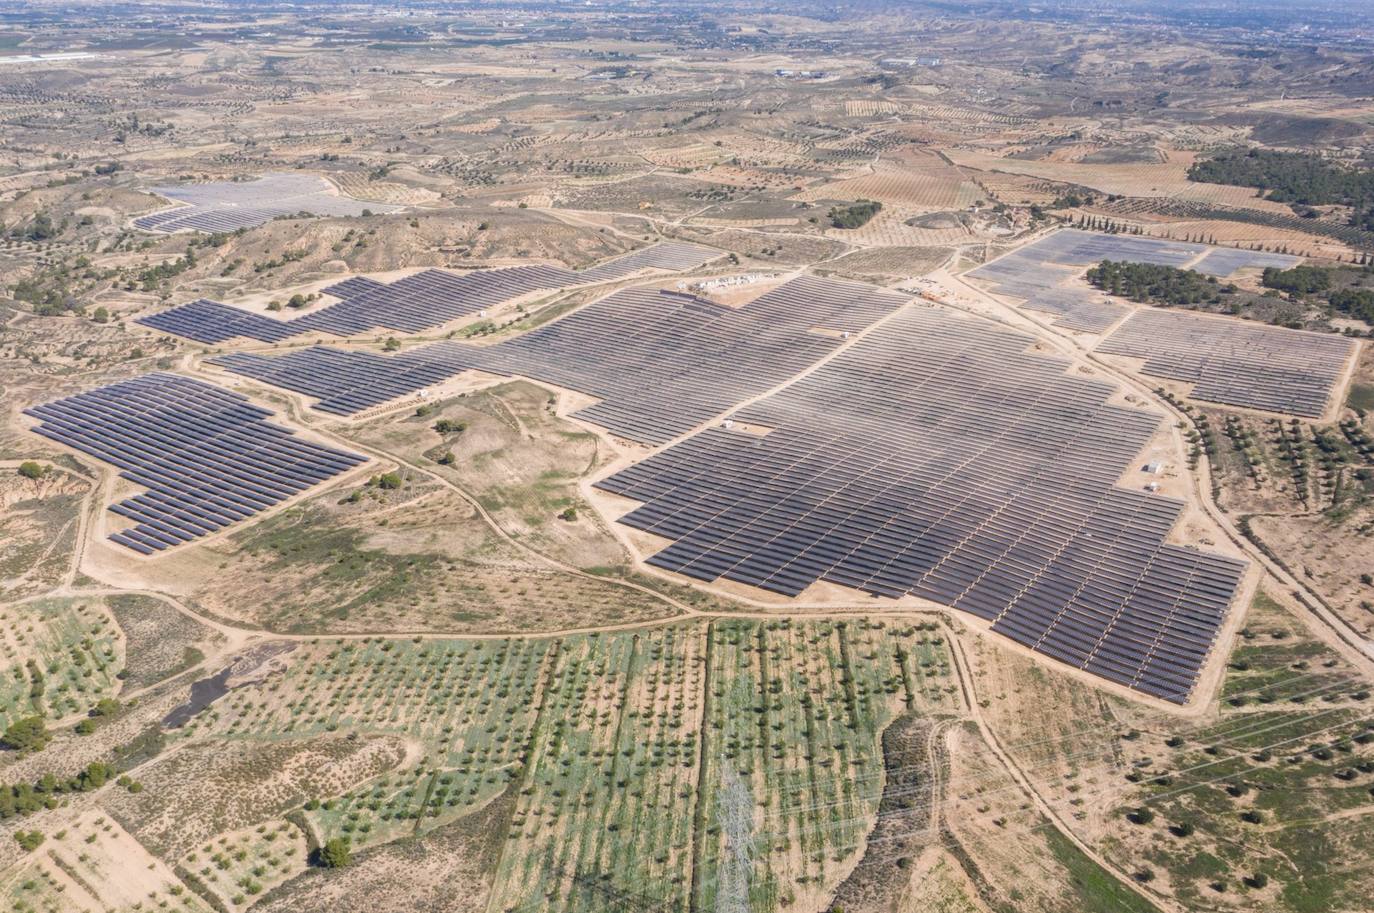 Aerial view of the photovoltaic solar plant in Las Torres de Cotillas.